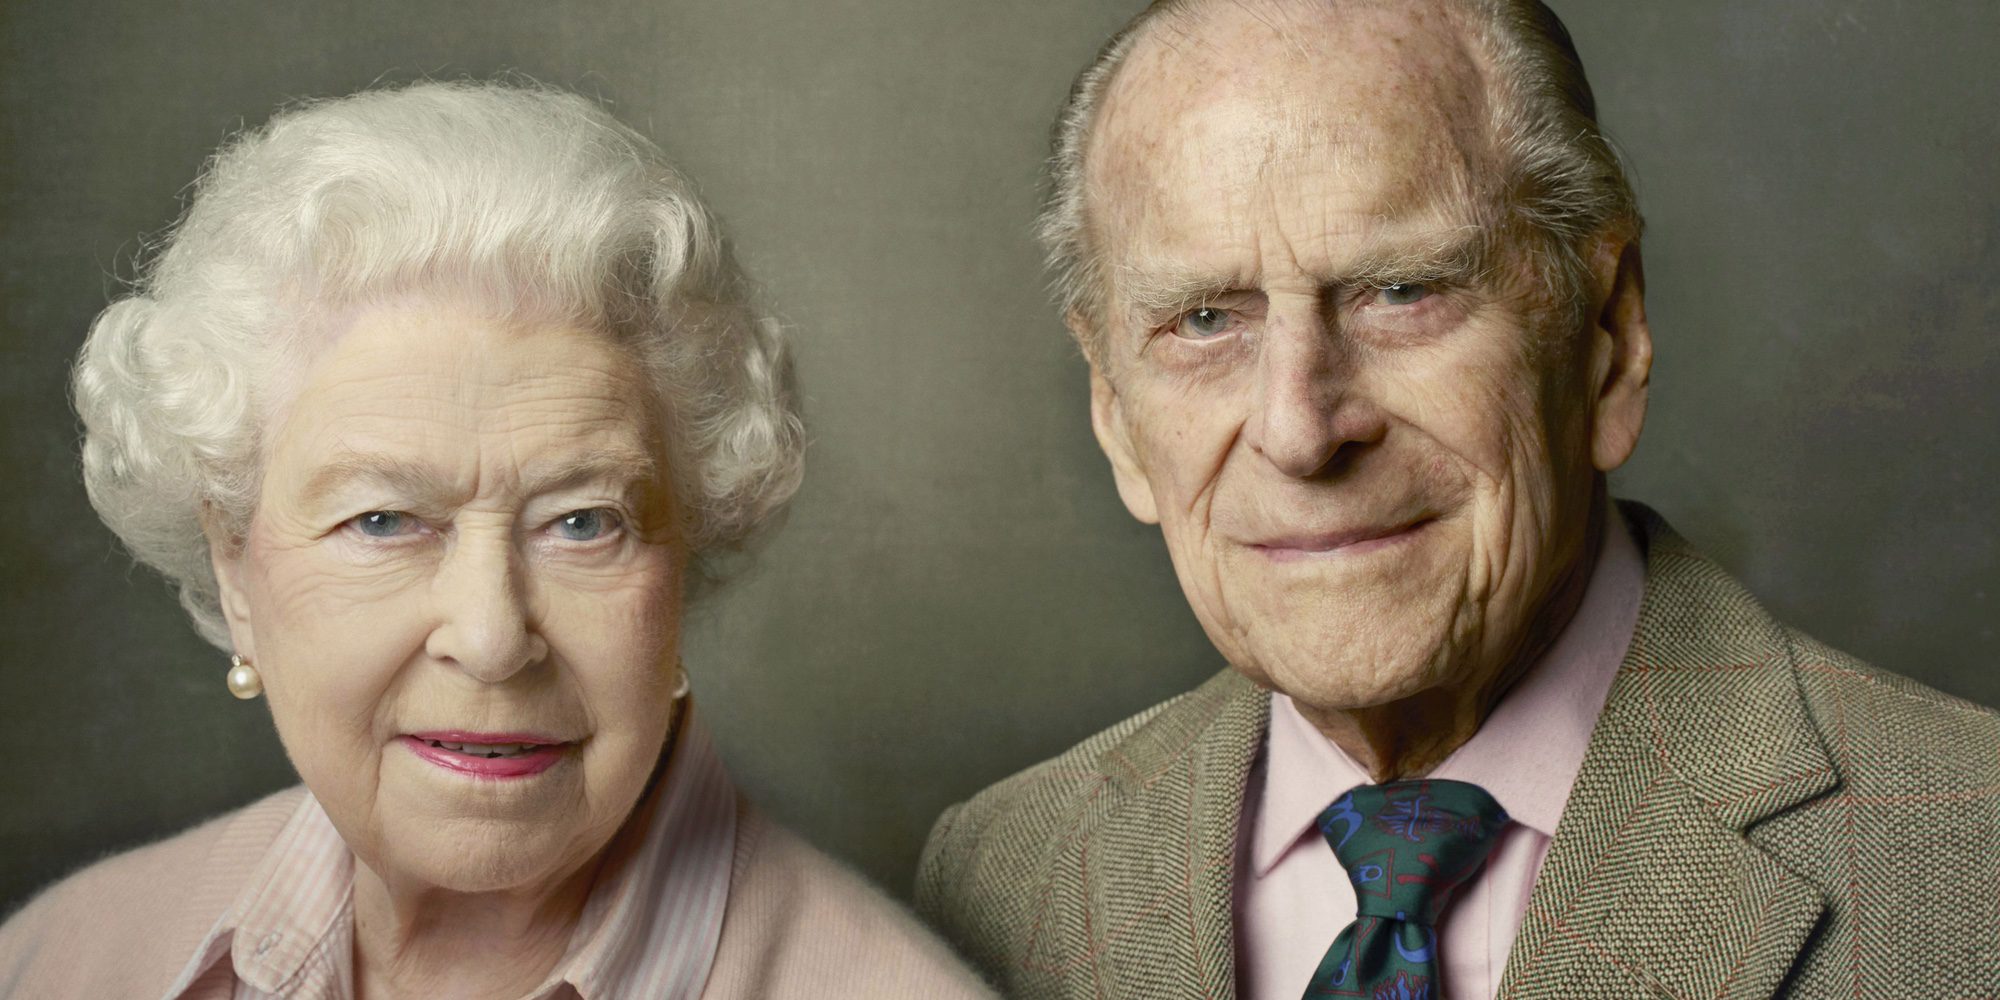 De la Reina Isabel al Duque de Edimburgo: los royals más longevos del mundo